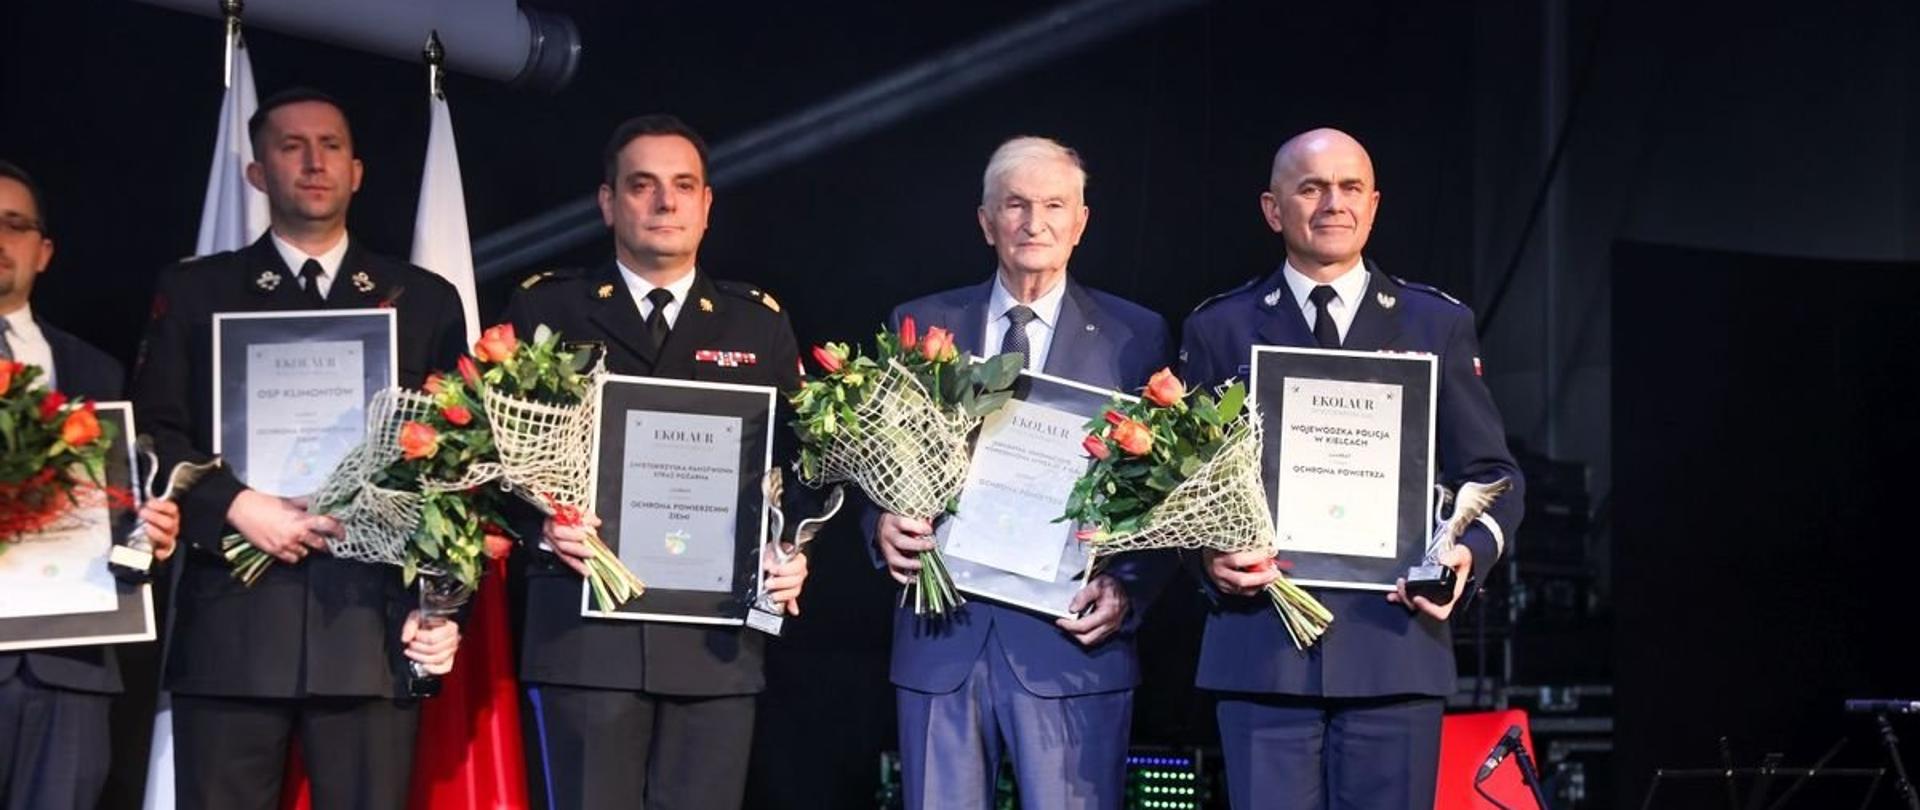 Na zdjęciu widzimy pozujących do zdjęcia laureatów ekolaur. W tym drugi od lewej strażacki generał.